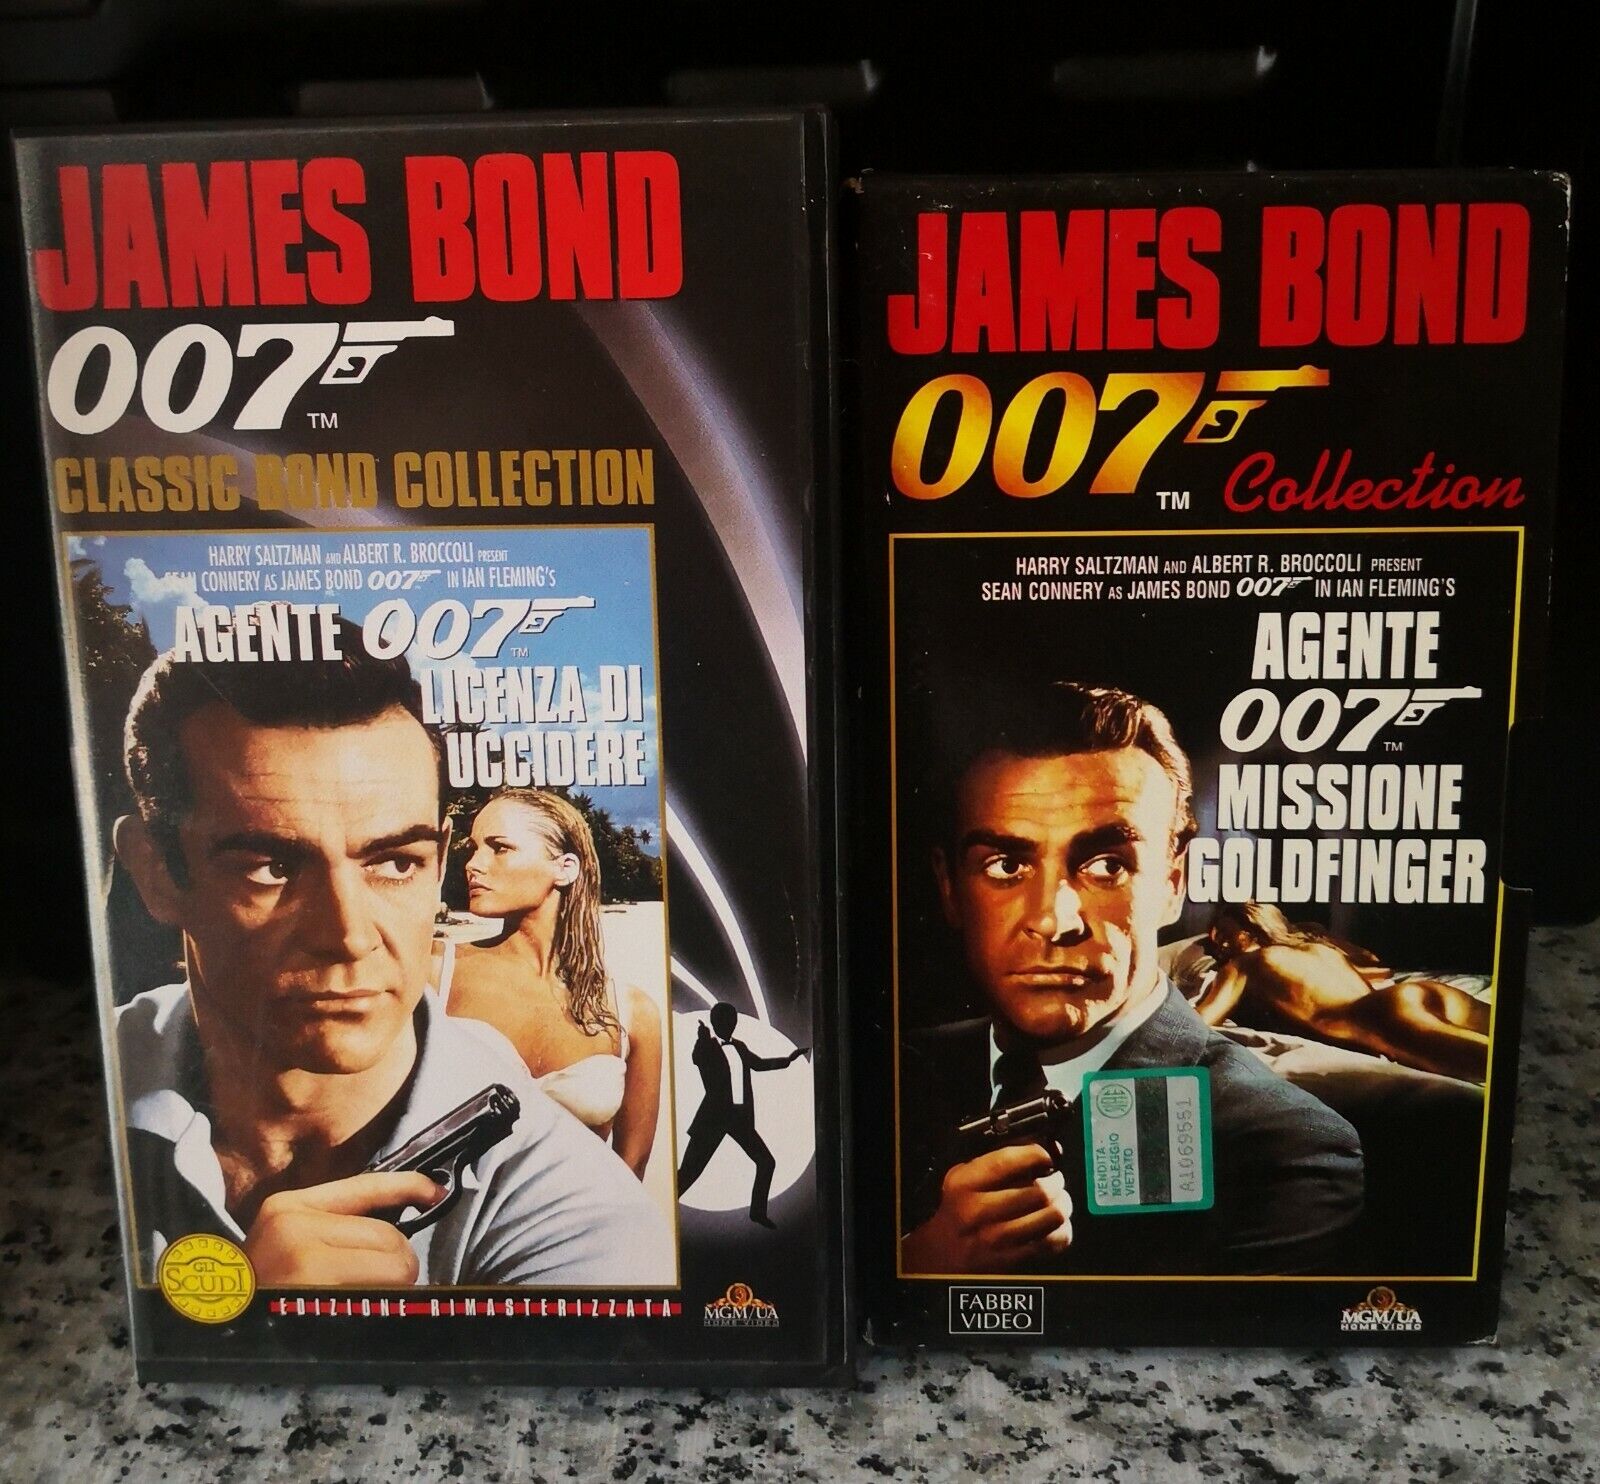 Agente 007 - 2 vhs - licenza di uccidere e missione goldfinger -1996 -F